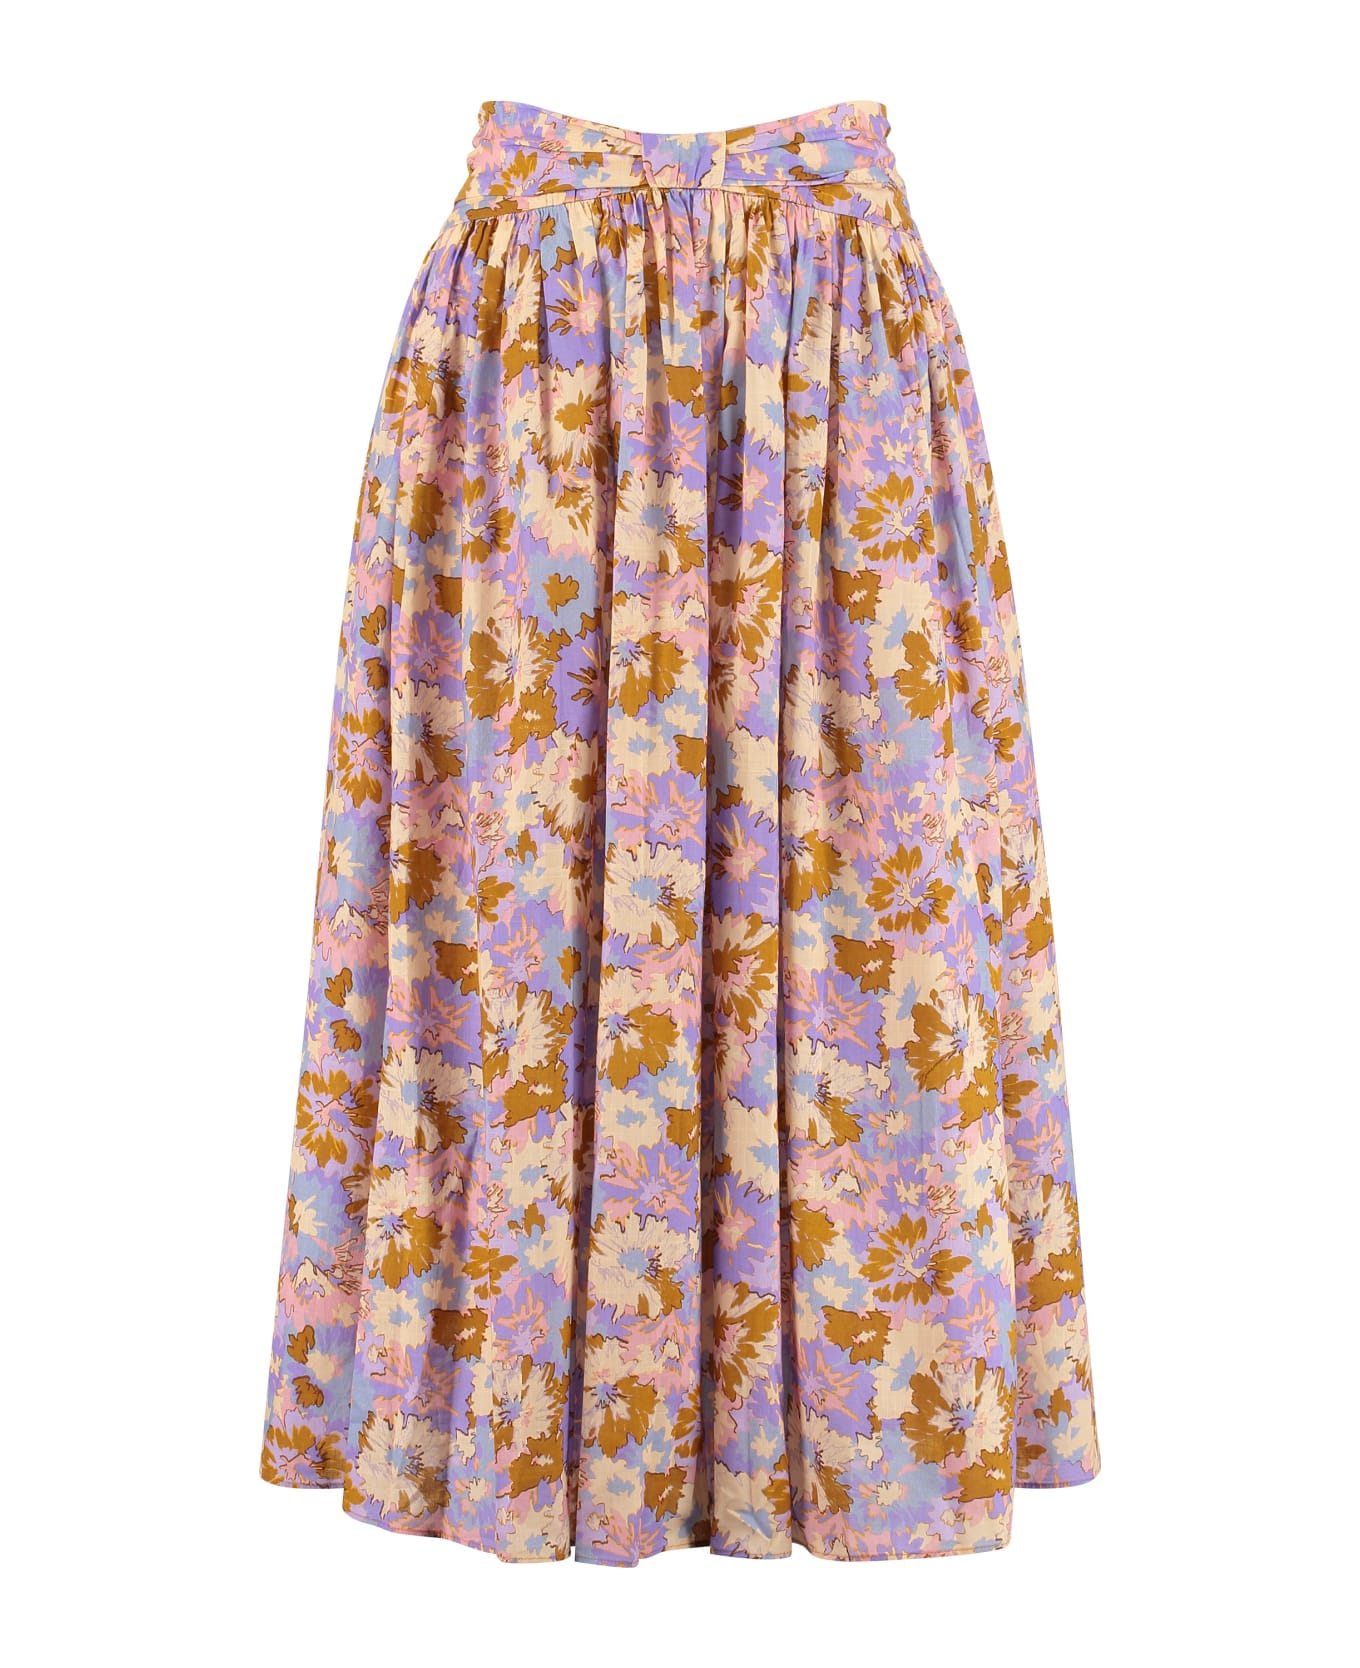 Zimmermann Violet Floral Print Skirt - Multicolor